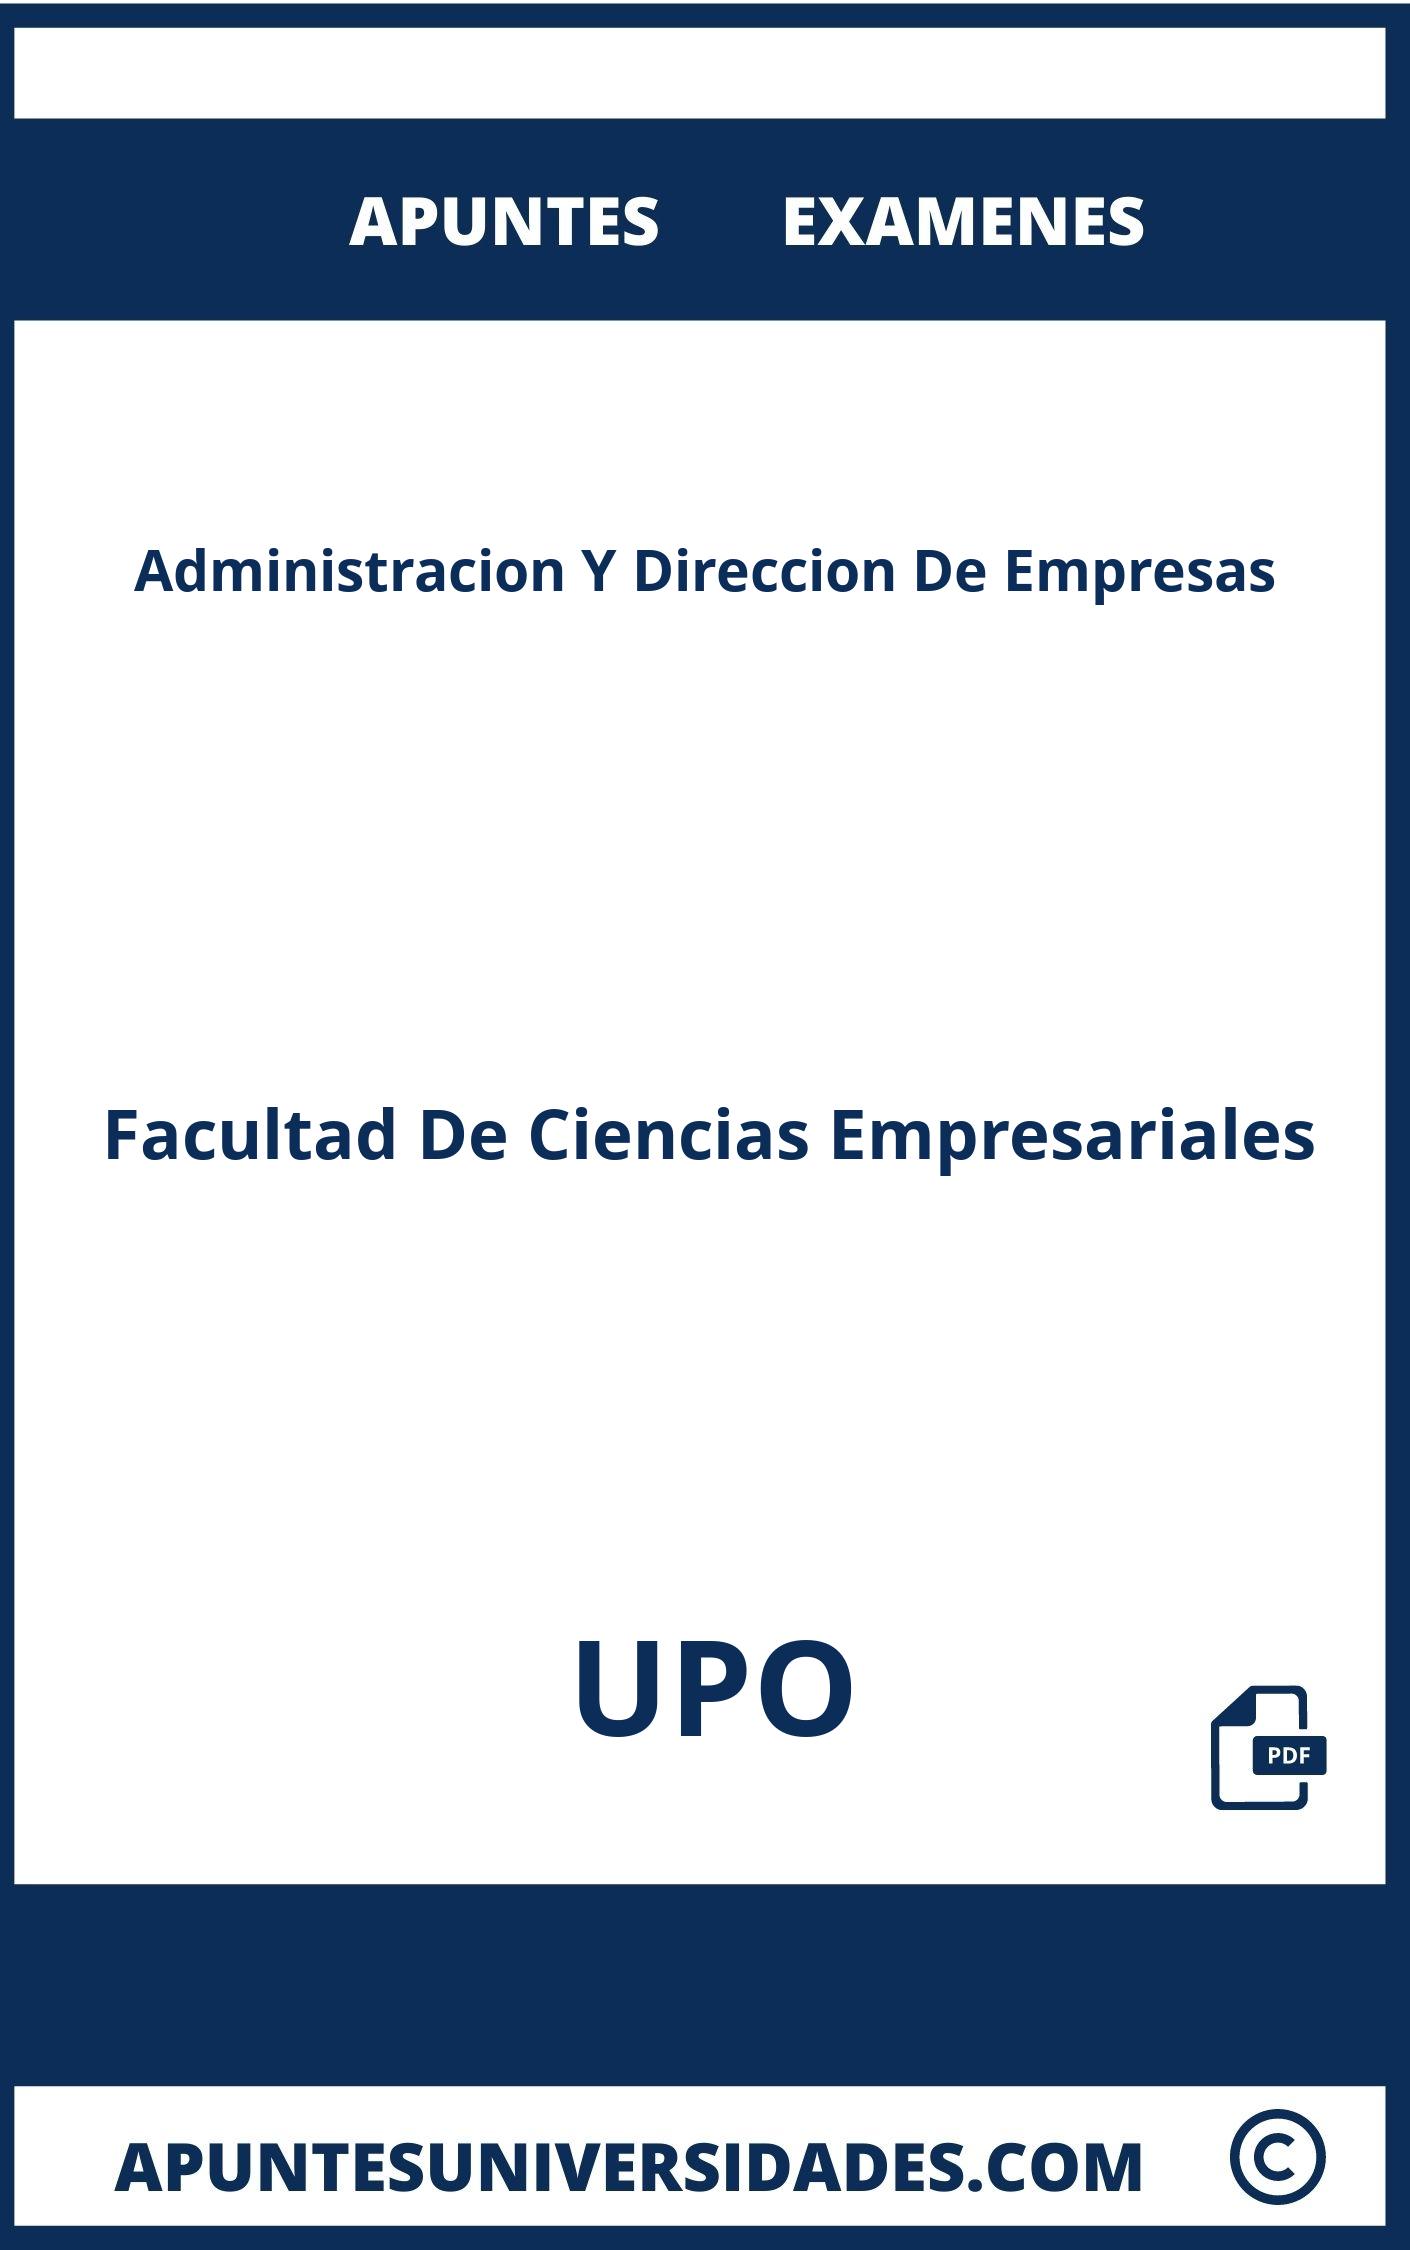 Examenes Apuntes Administracion Y Direccion De Empresas UPO